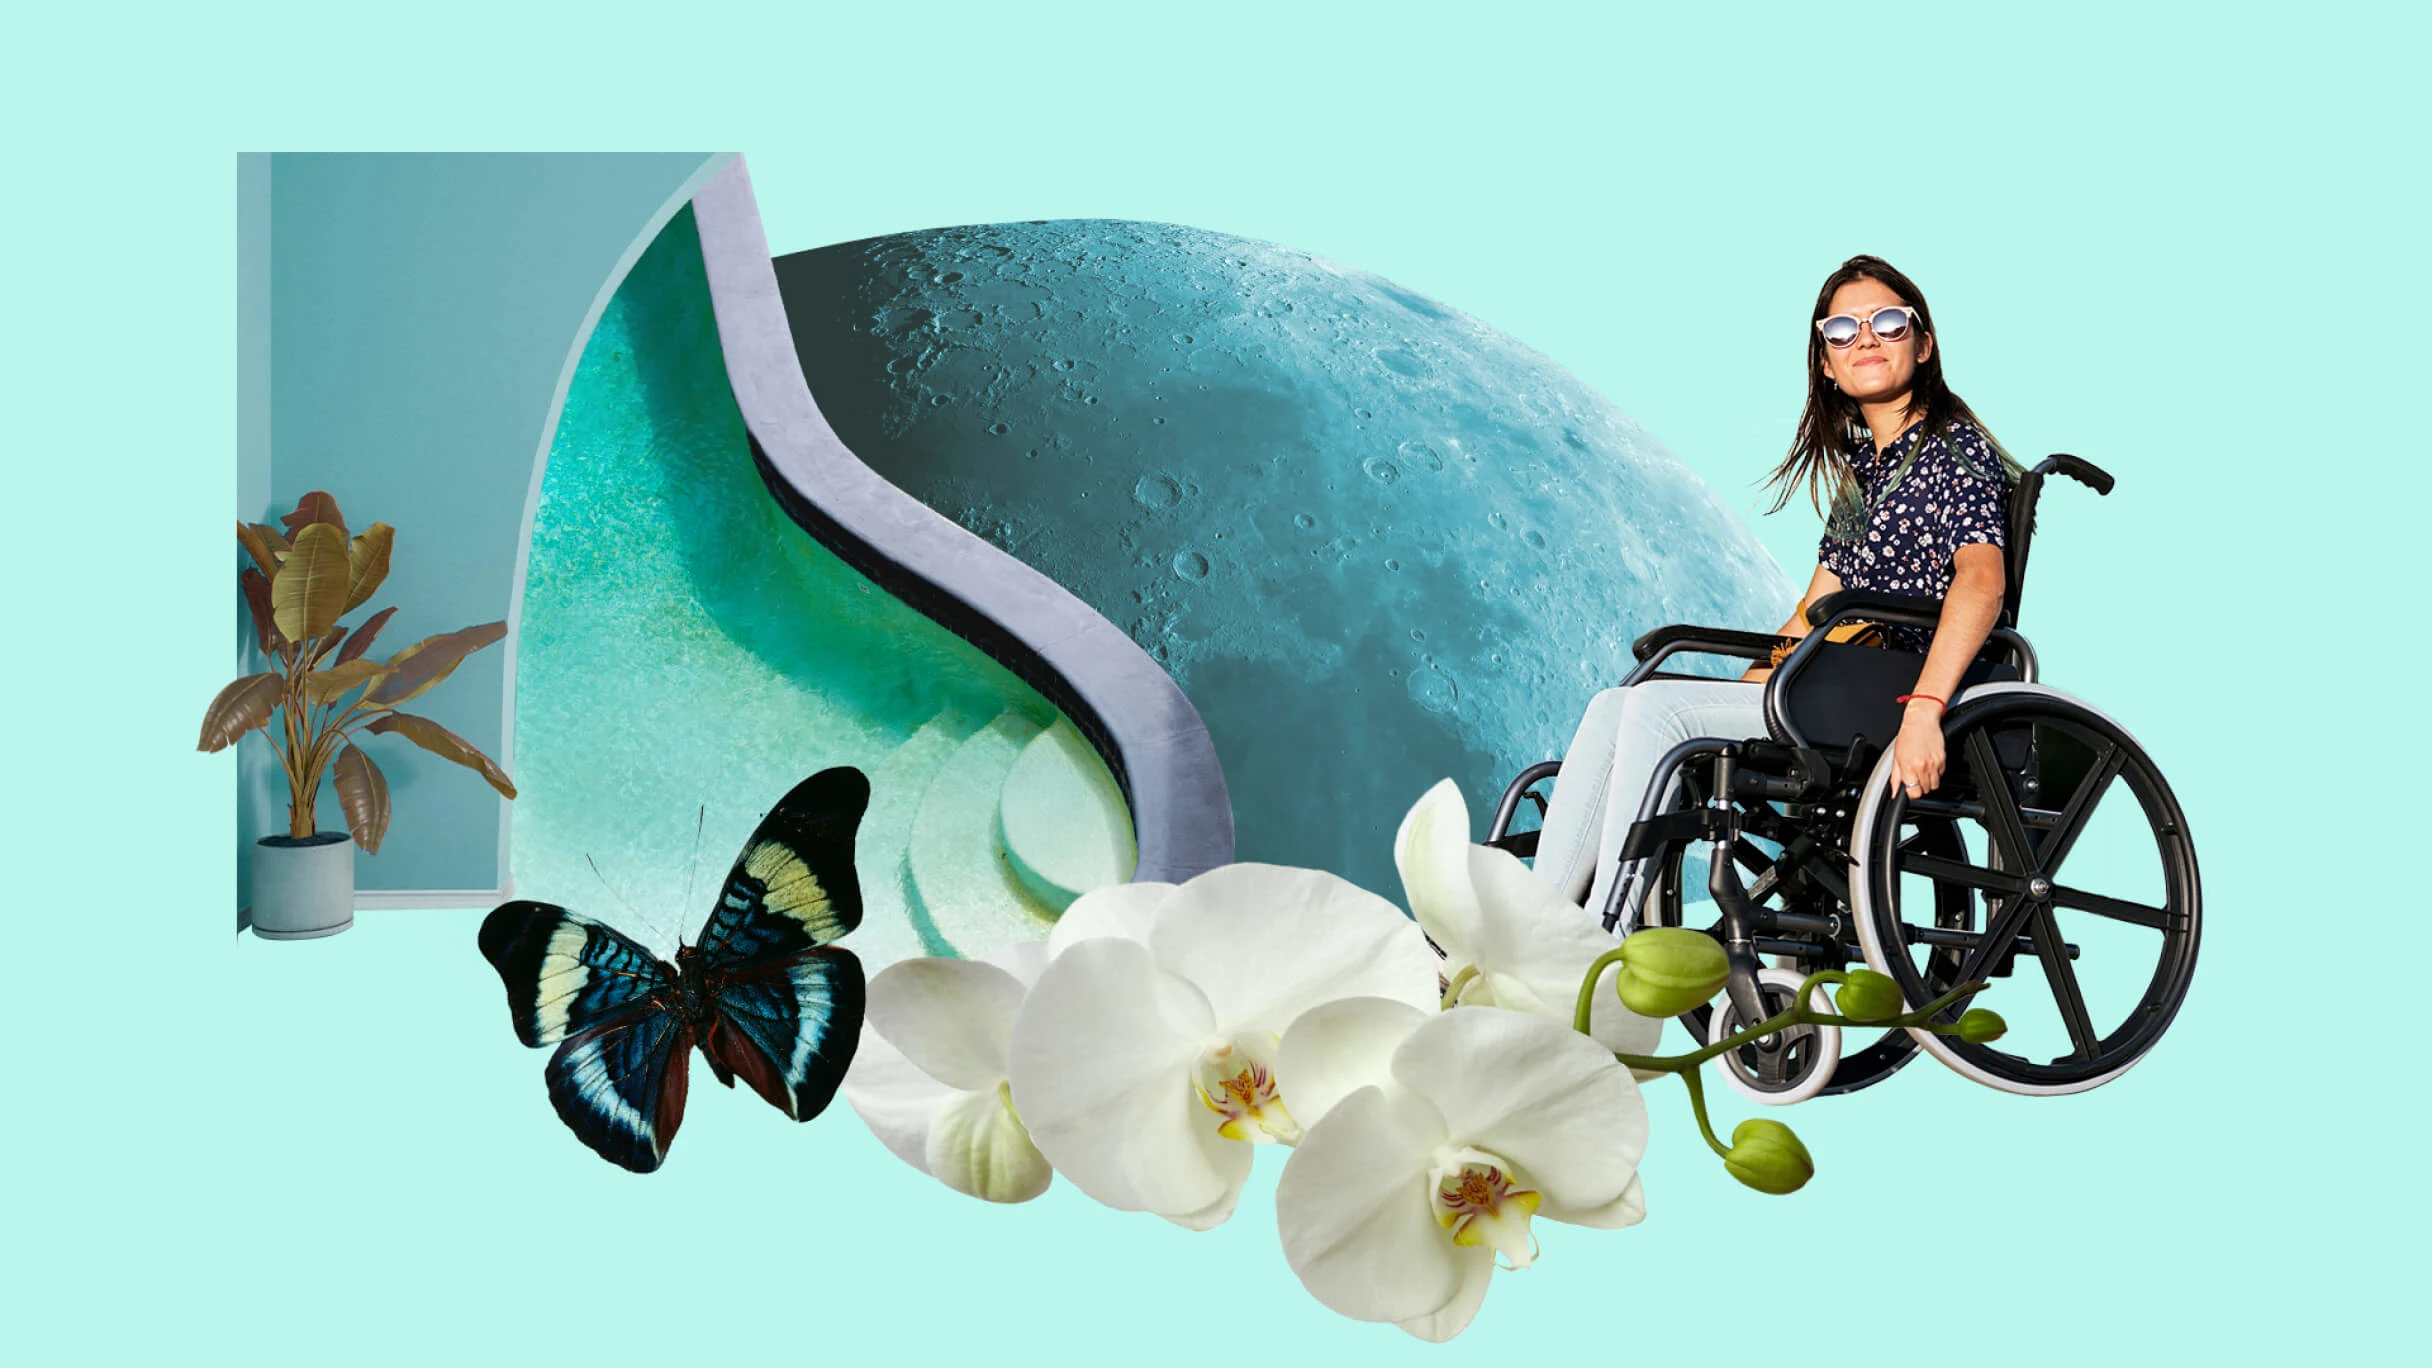 Güneş gözlüklü beyaz bir kadın tekerlekli sandalyede oturuyor. Soluk mavi tondaki ay yüzeyi. Siyah ve mavi bir kelebek beyaz orkidelerin yanında kanat çırpıyor. Eğimli bir yüzme havuzunun yanında, odanın köşesinde yeşil bir bitki duruyor. 